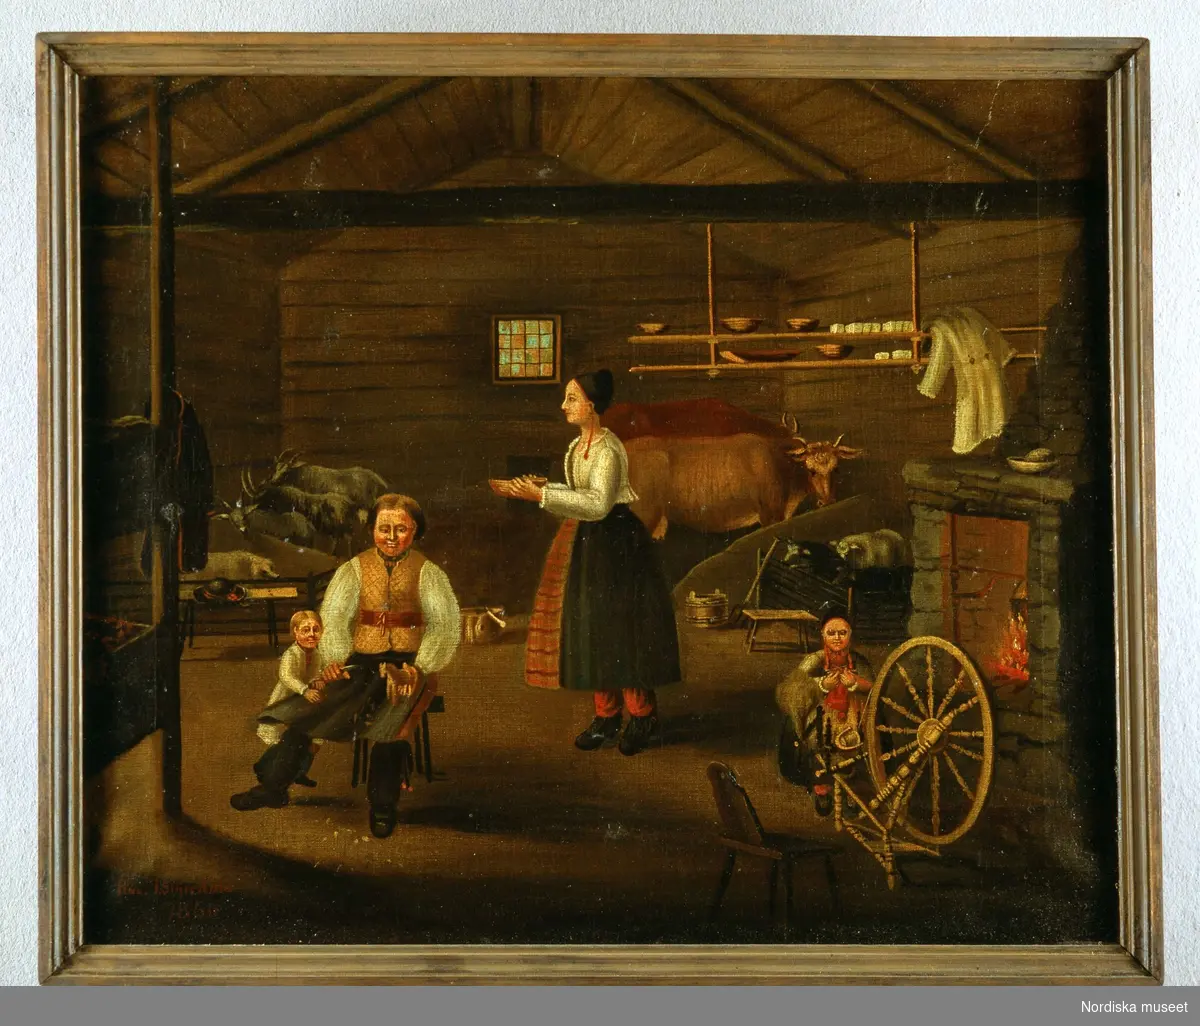 Stuginteriör med djur från Rättvik, Dalarna. Målning av I. Siljerdahl. Nordiska museet inv nr 173975.